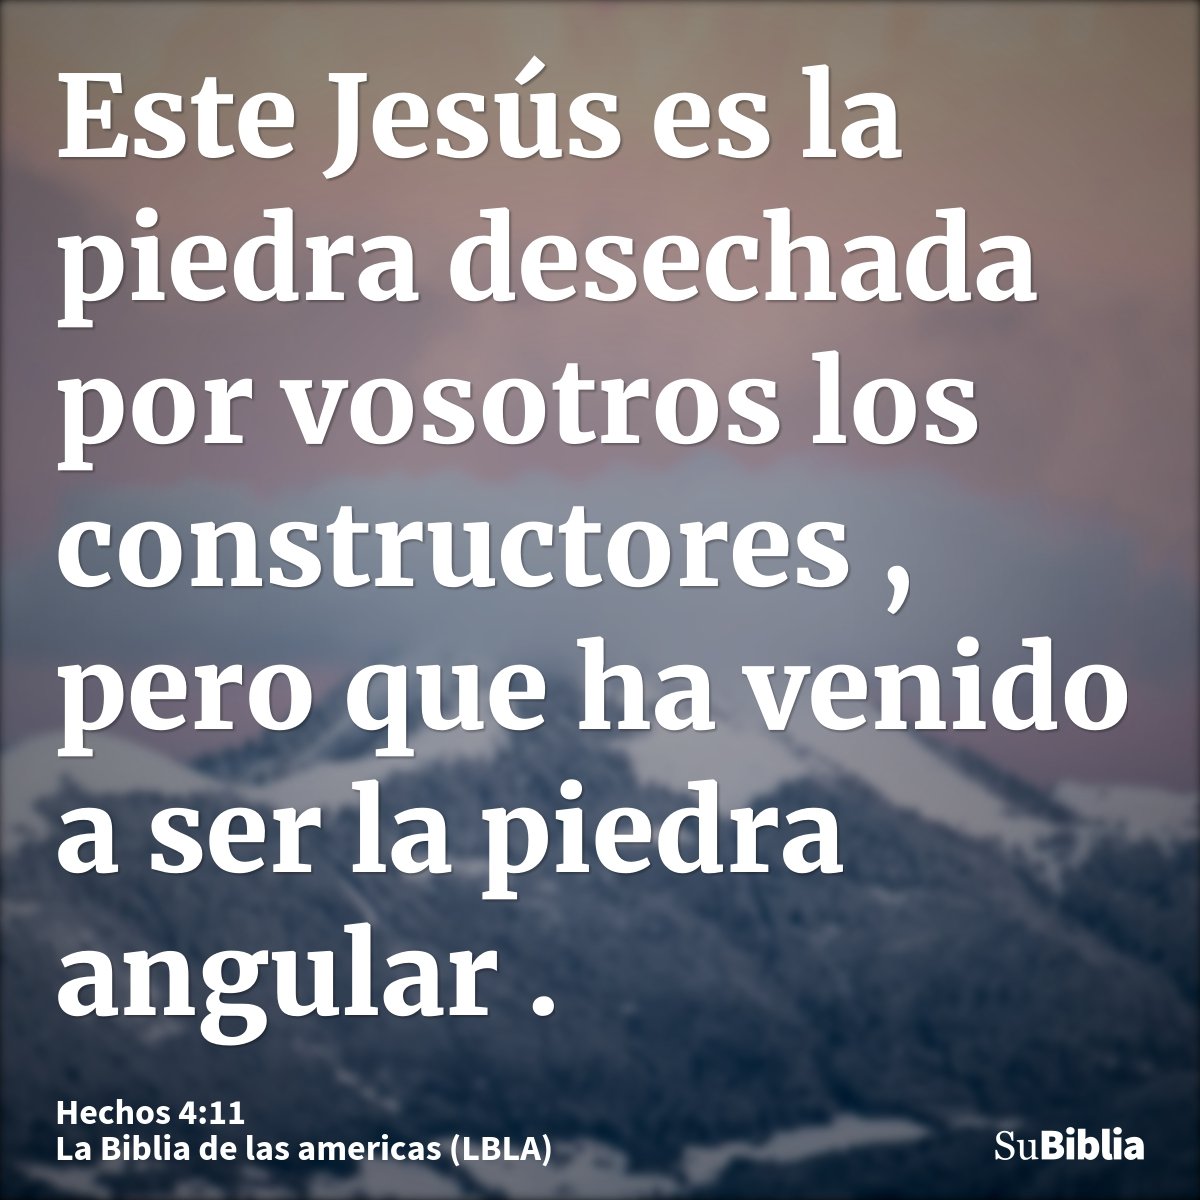 Este Jesús es la piedra desechada por vosotros los constructores , pero que ha venido a ser la piedra angular.